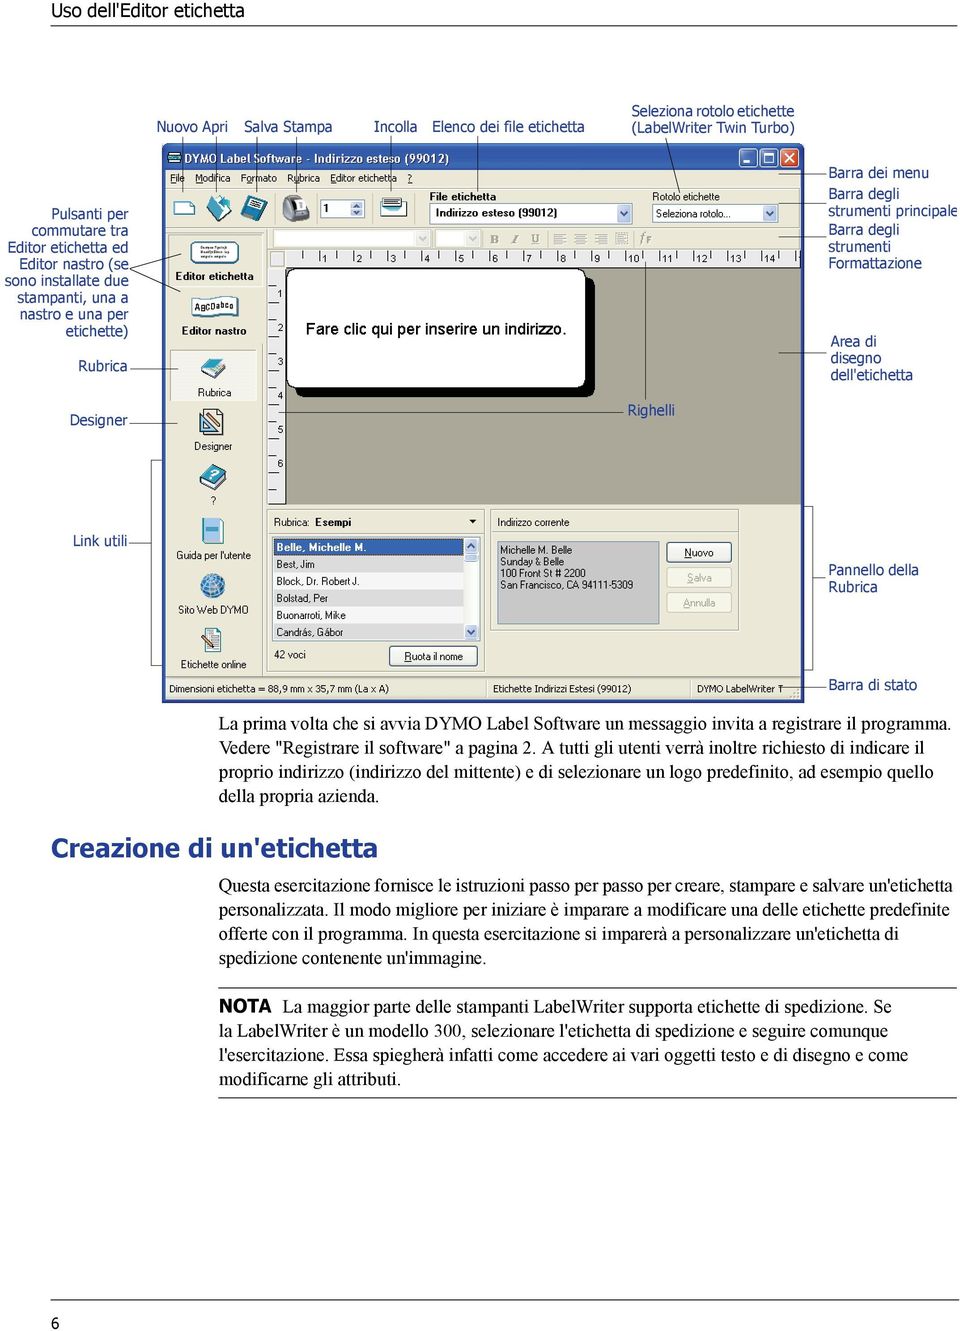 Designer Righelli Link utili Pannello della Rubrica Creazione di un'etichetta Barra di stato La prima volta che si avvia DYMO Label Software un messaggio invita a registrare il programma.